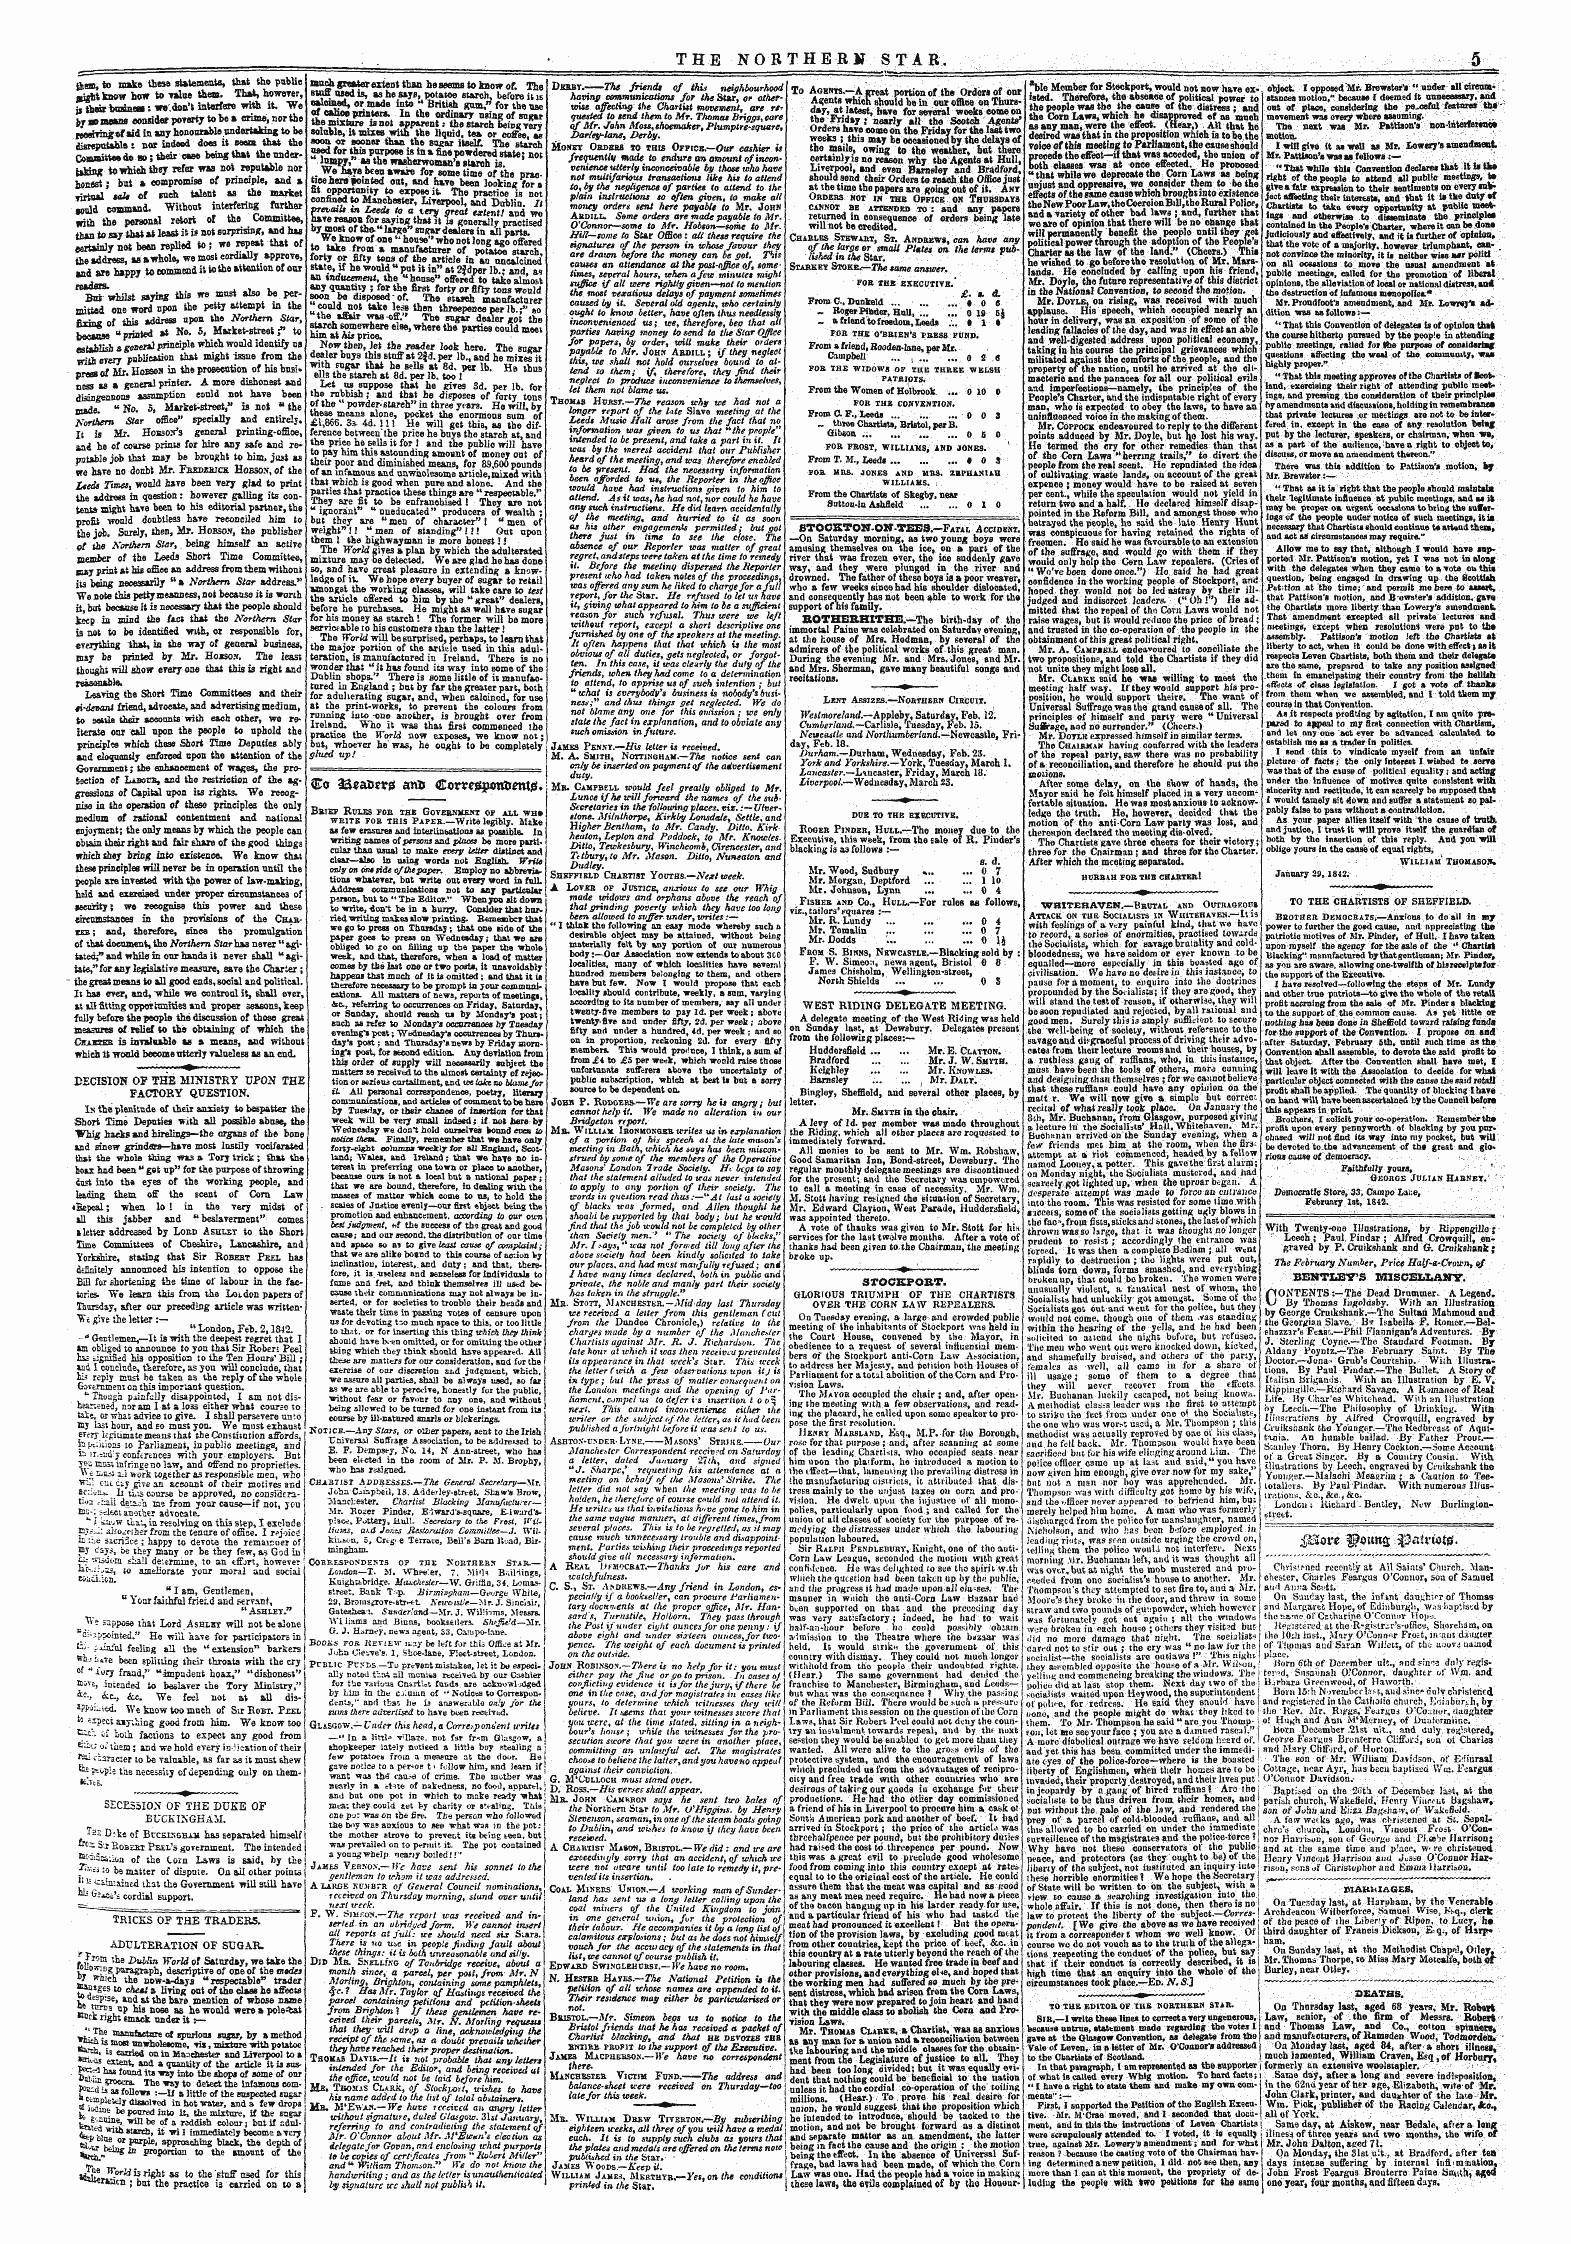 Northern Star (1837-1852): jS F Y, 4th edition - $Ffiot:E: ^Mtns ^Pa Trtotjj . : .